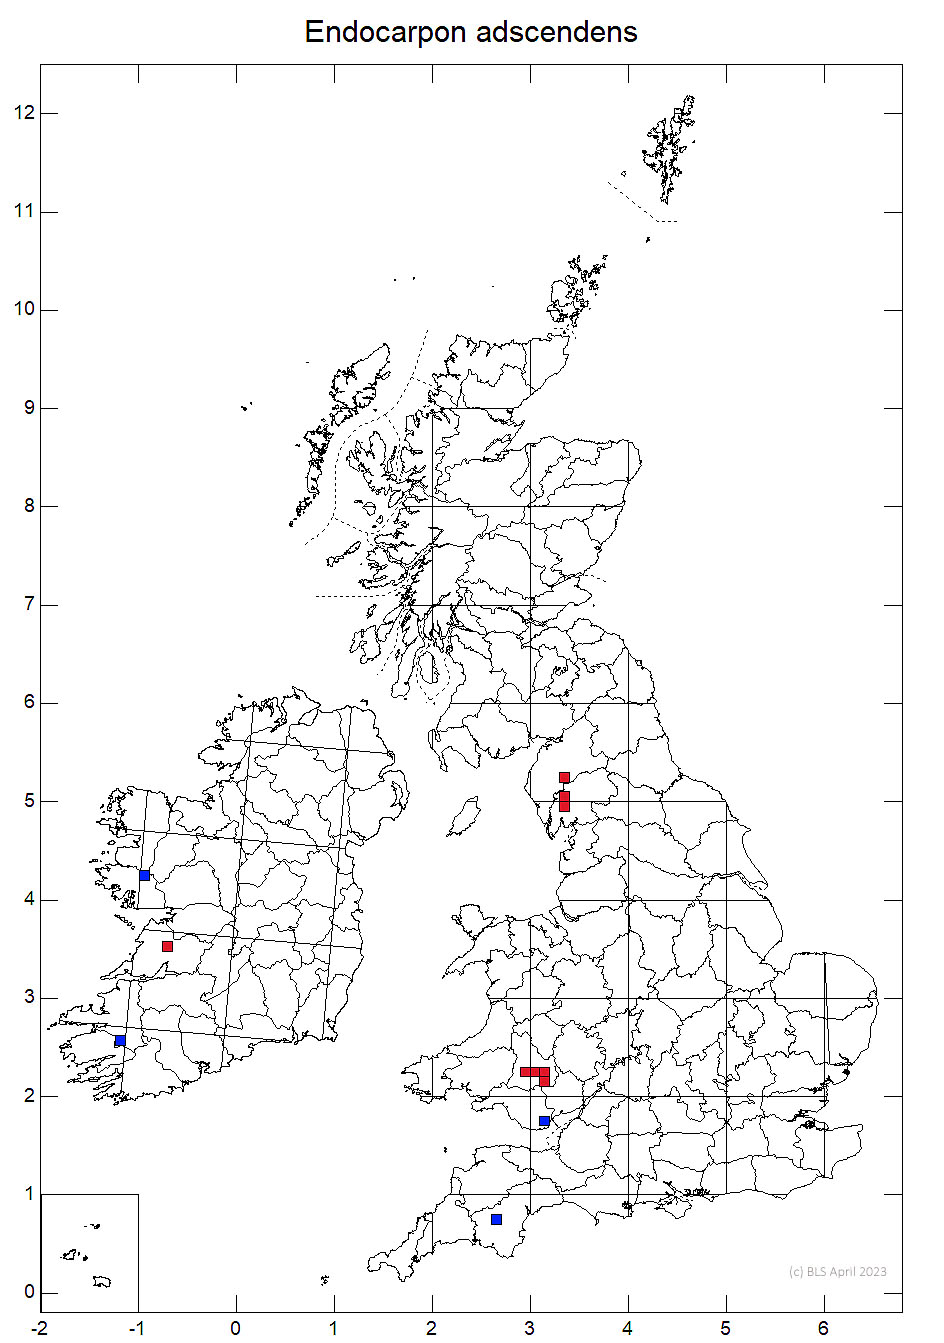 Endocarpon adscendens 10km sq distribution map